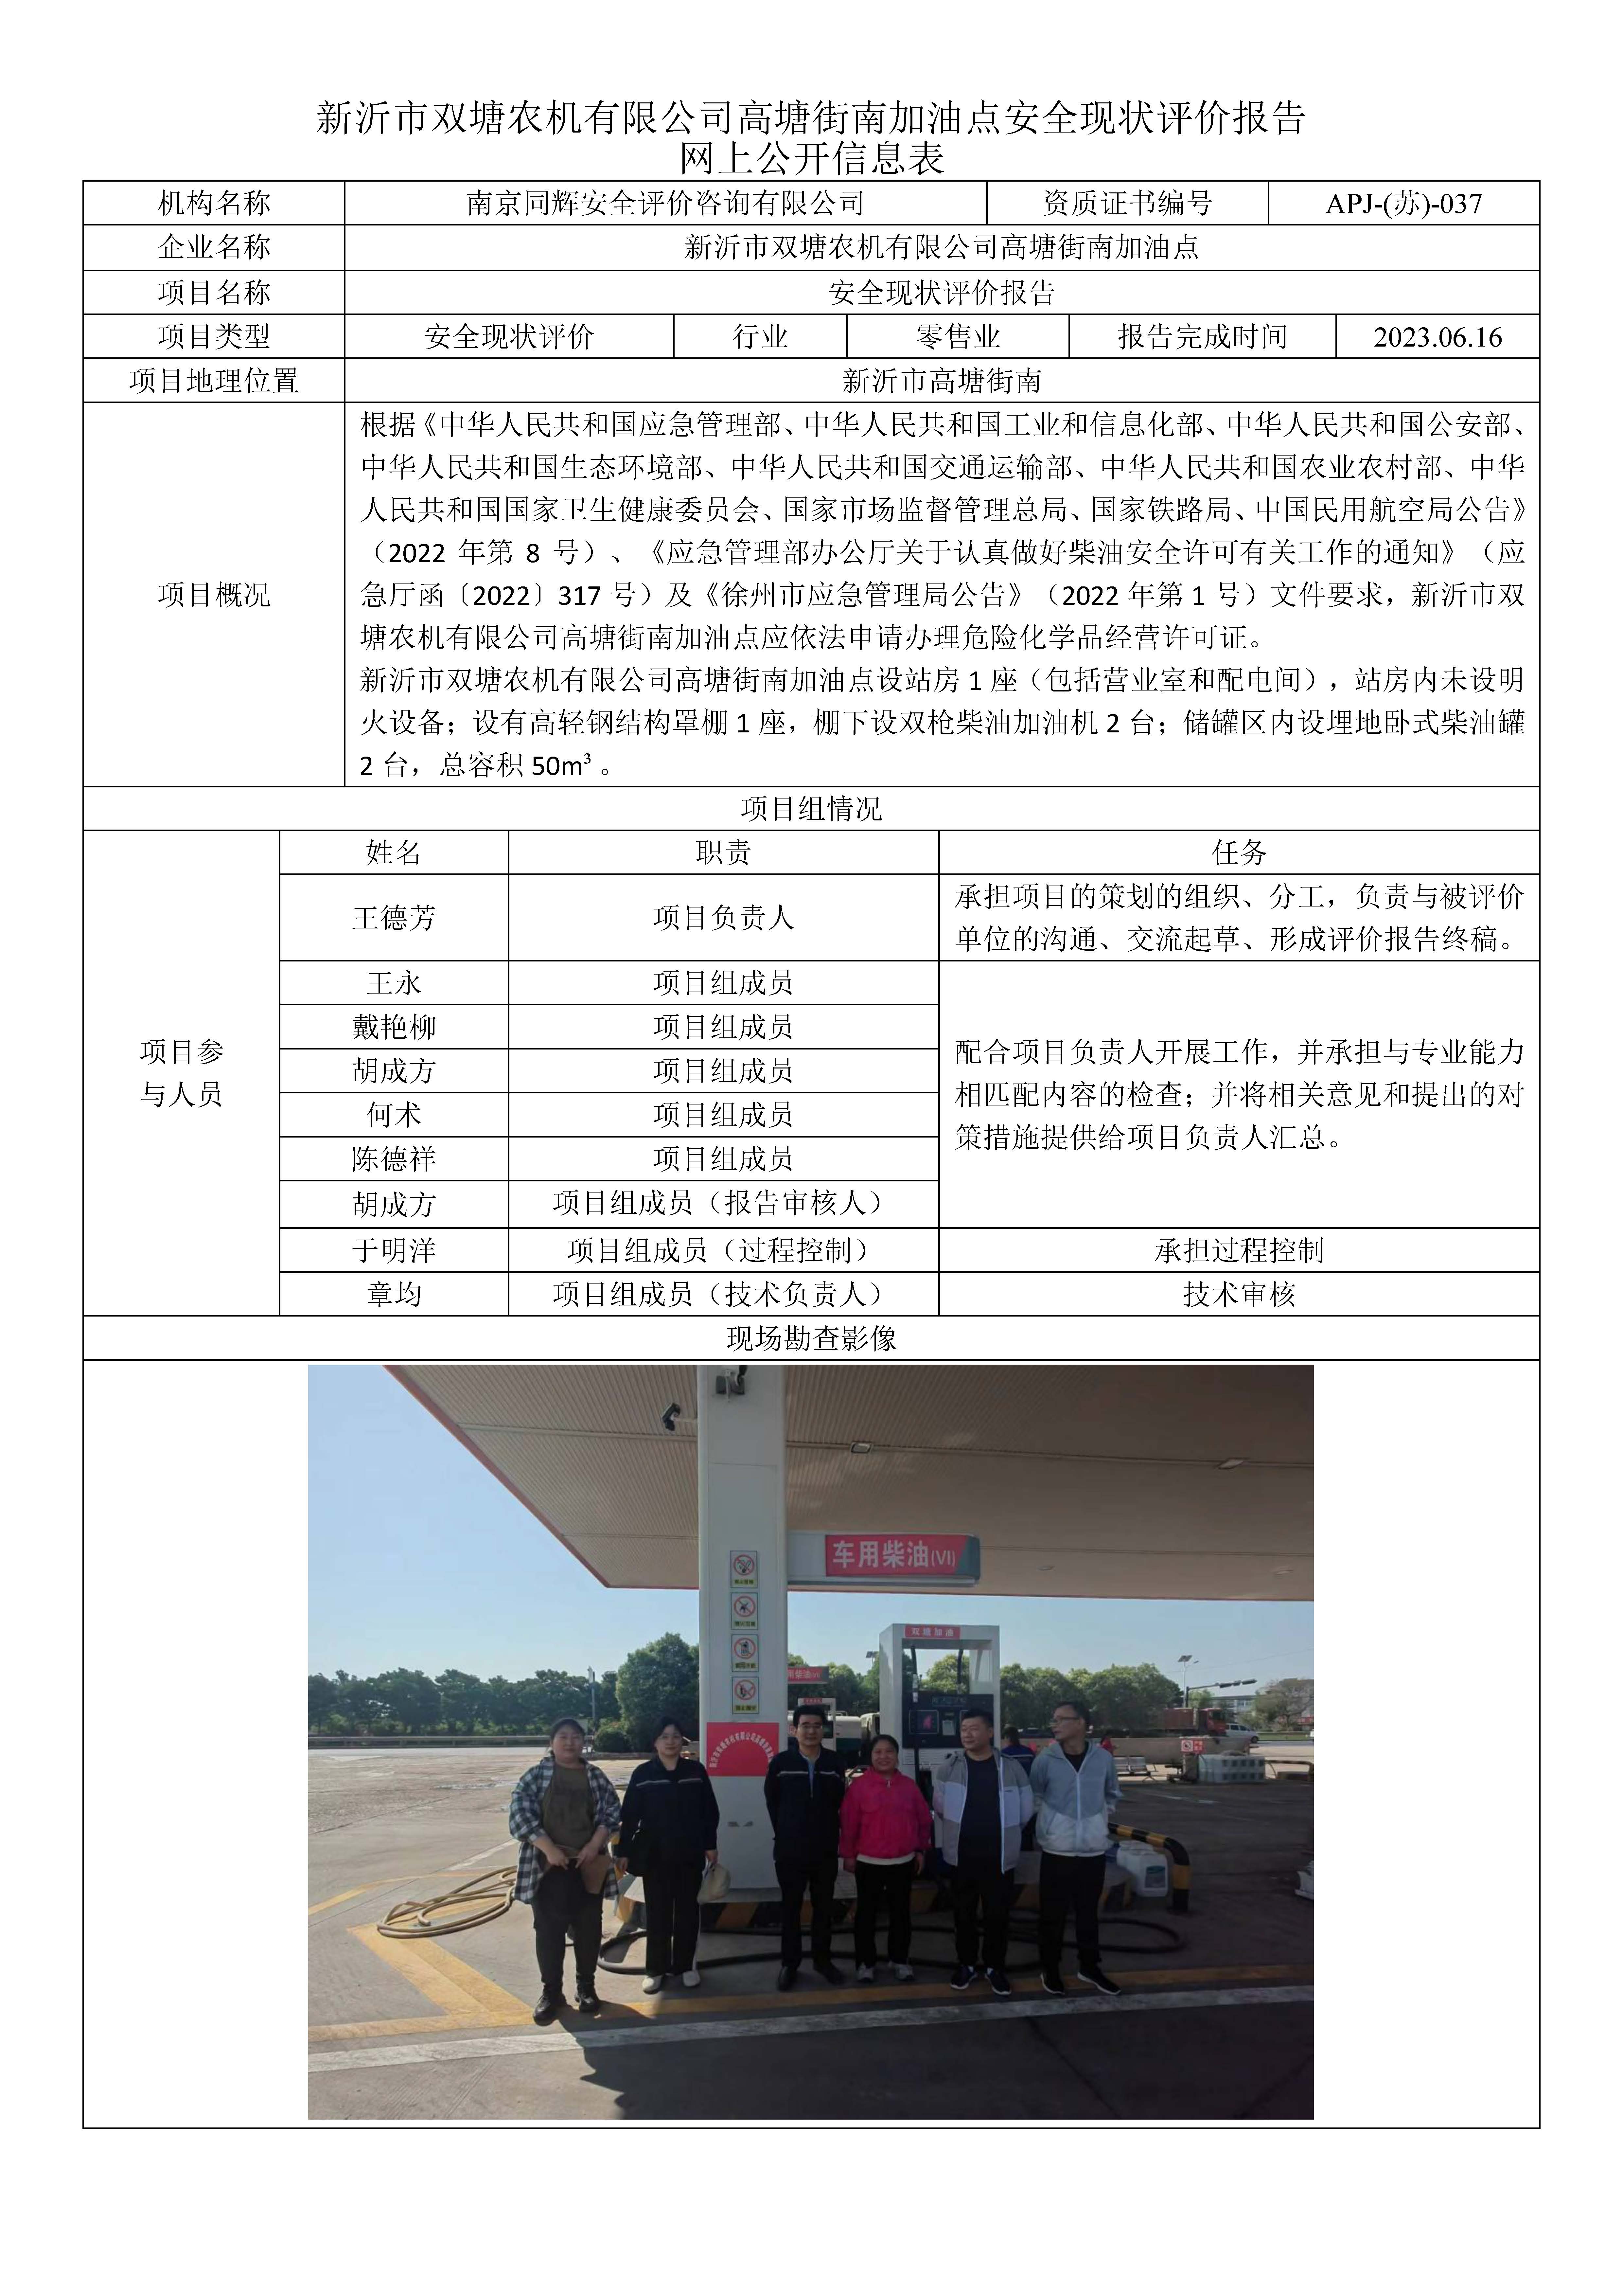 双塘农机高塘街南加油点安全现状评价报告网上公开信息表.jpg